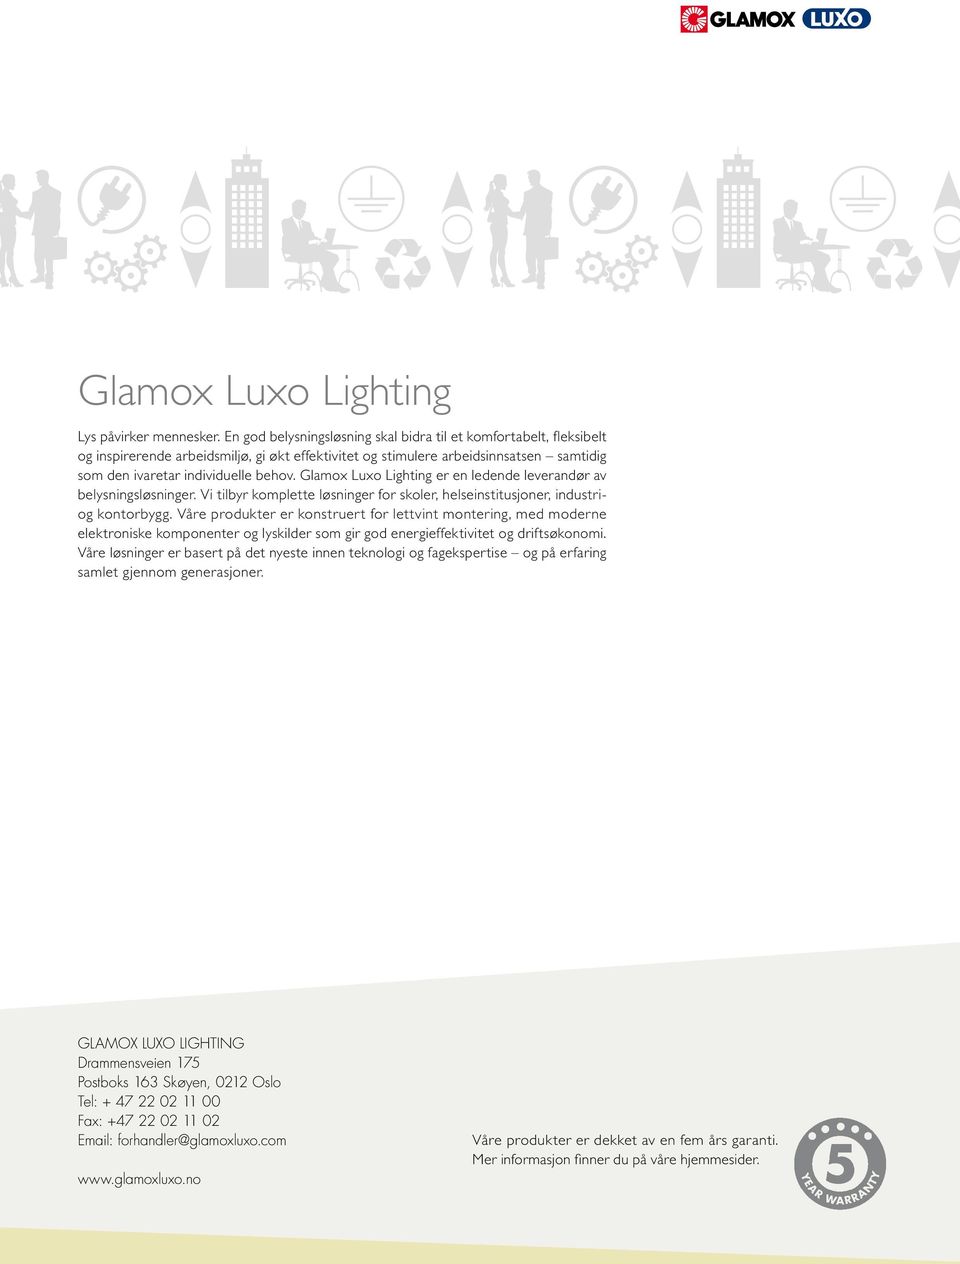 Glamox Luxo Lighting er en ledende leverandør av belysningsløsninger. Vi tilbyr komplette løsninger for skoler, helseinstitusjoner, industriog kontorbygg.